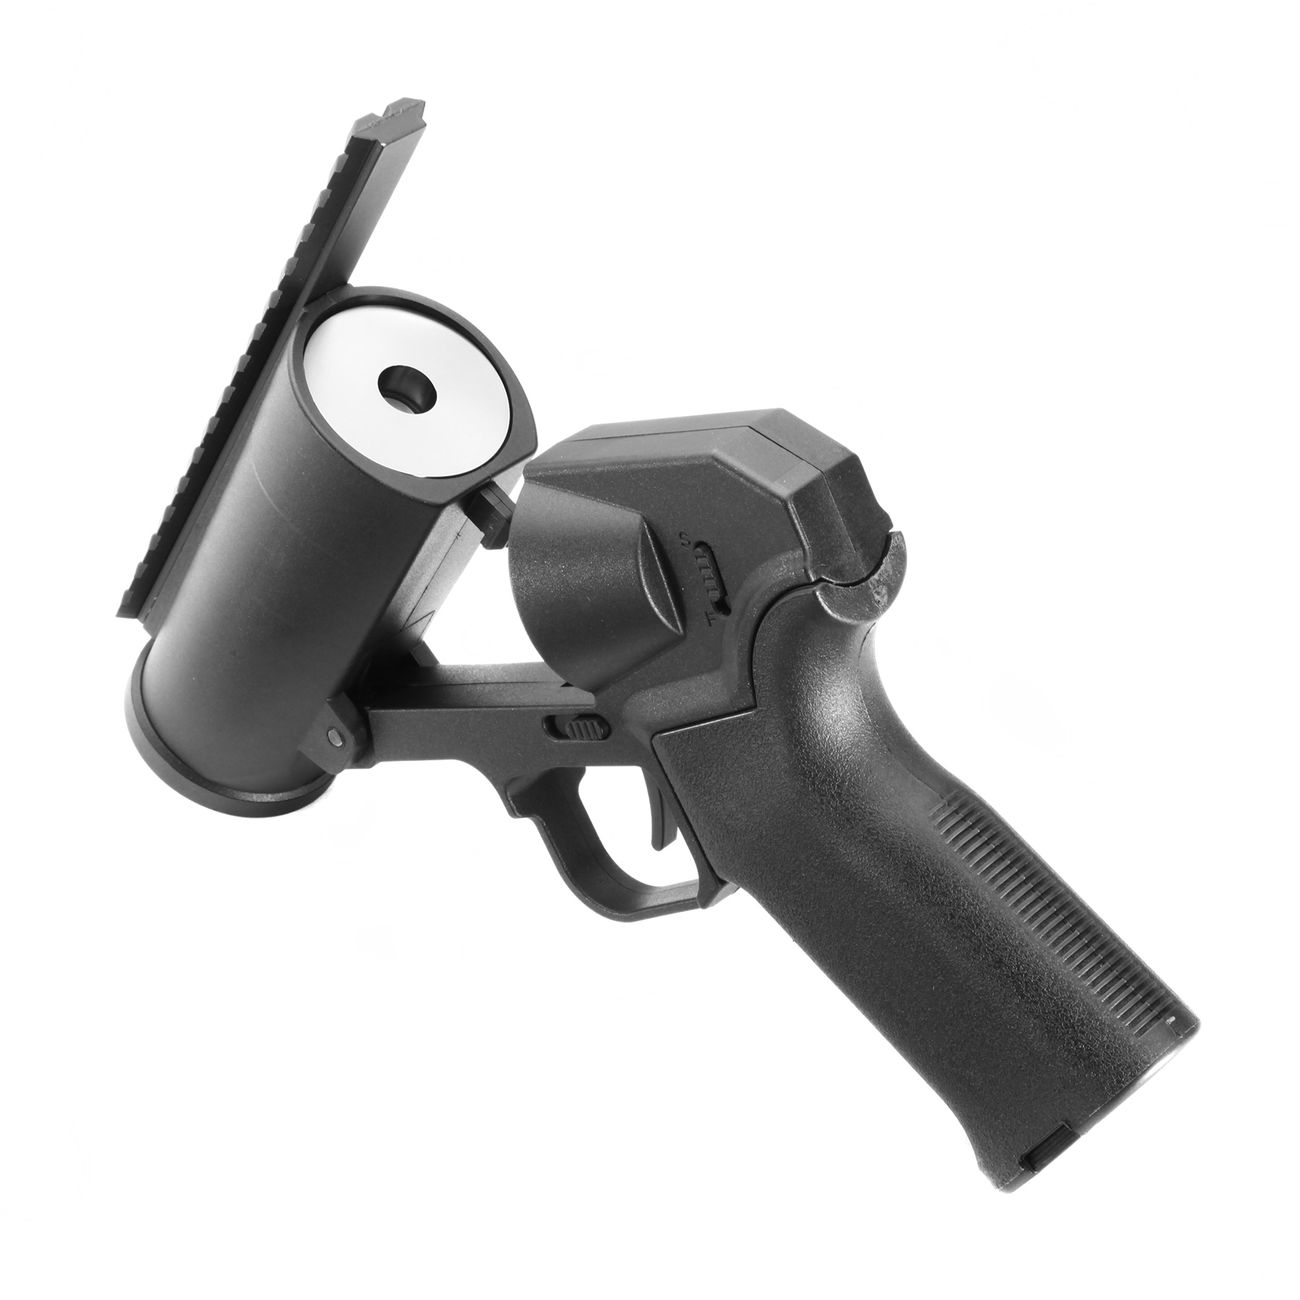 6mmProShop 40mm Airsoft Pocket Pistolen-Launcher Shorty schwarz Bild 1